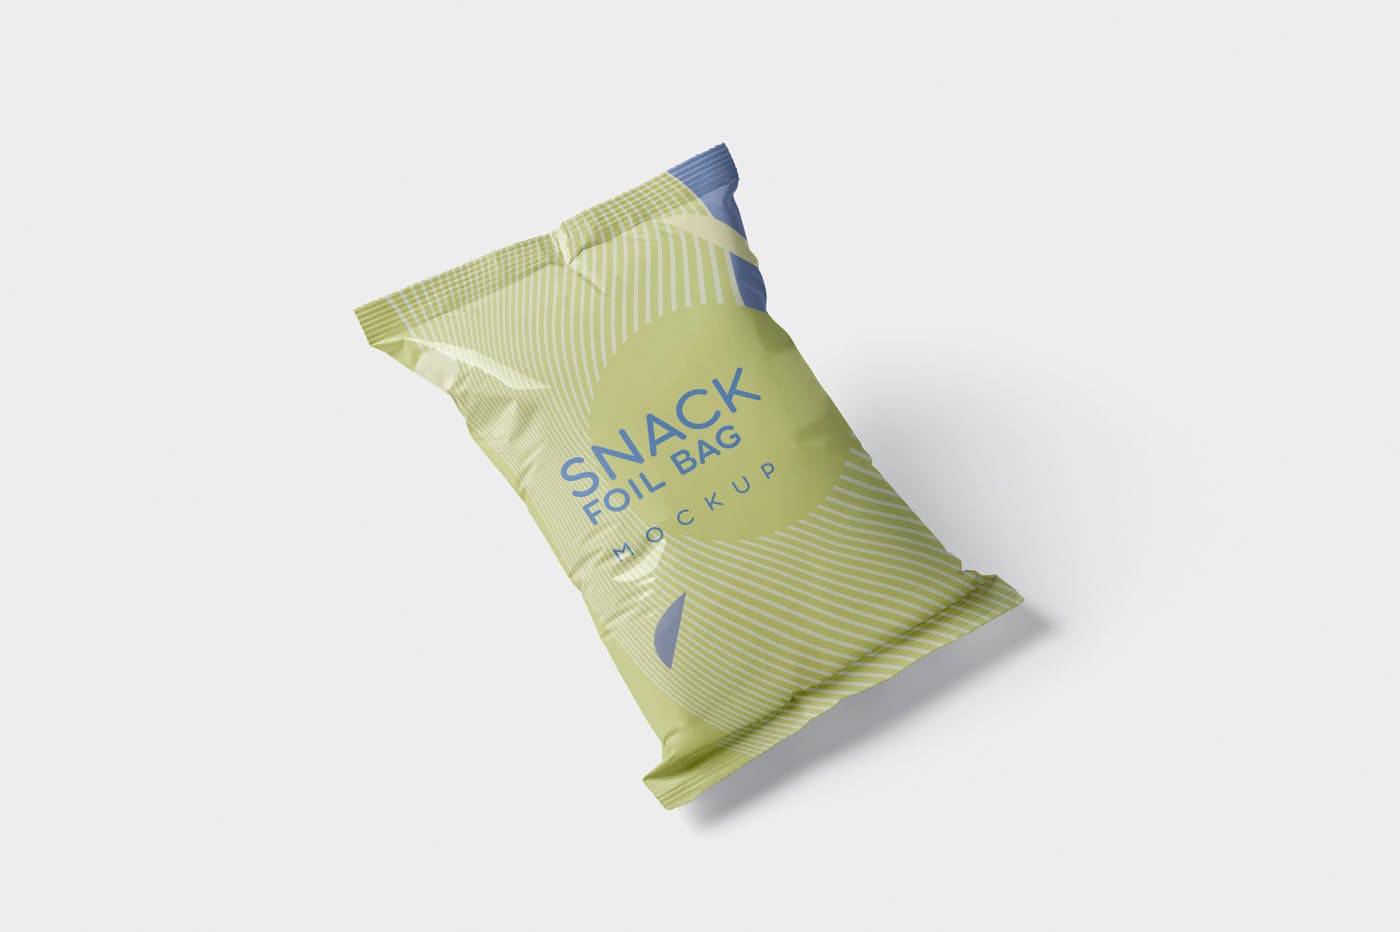 小吃零食铝箔袋/塑料包装袋设计图素材中国精选 Snack Foil Bag Mockup – Plastic插图(3)